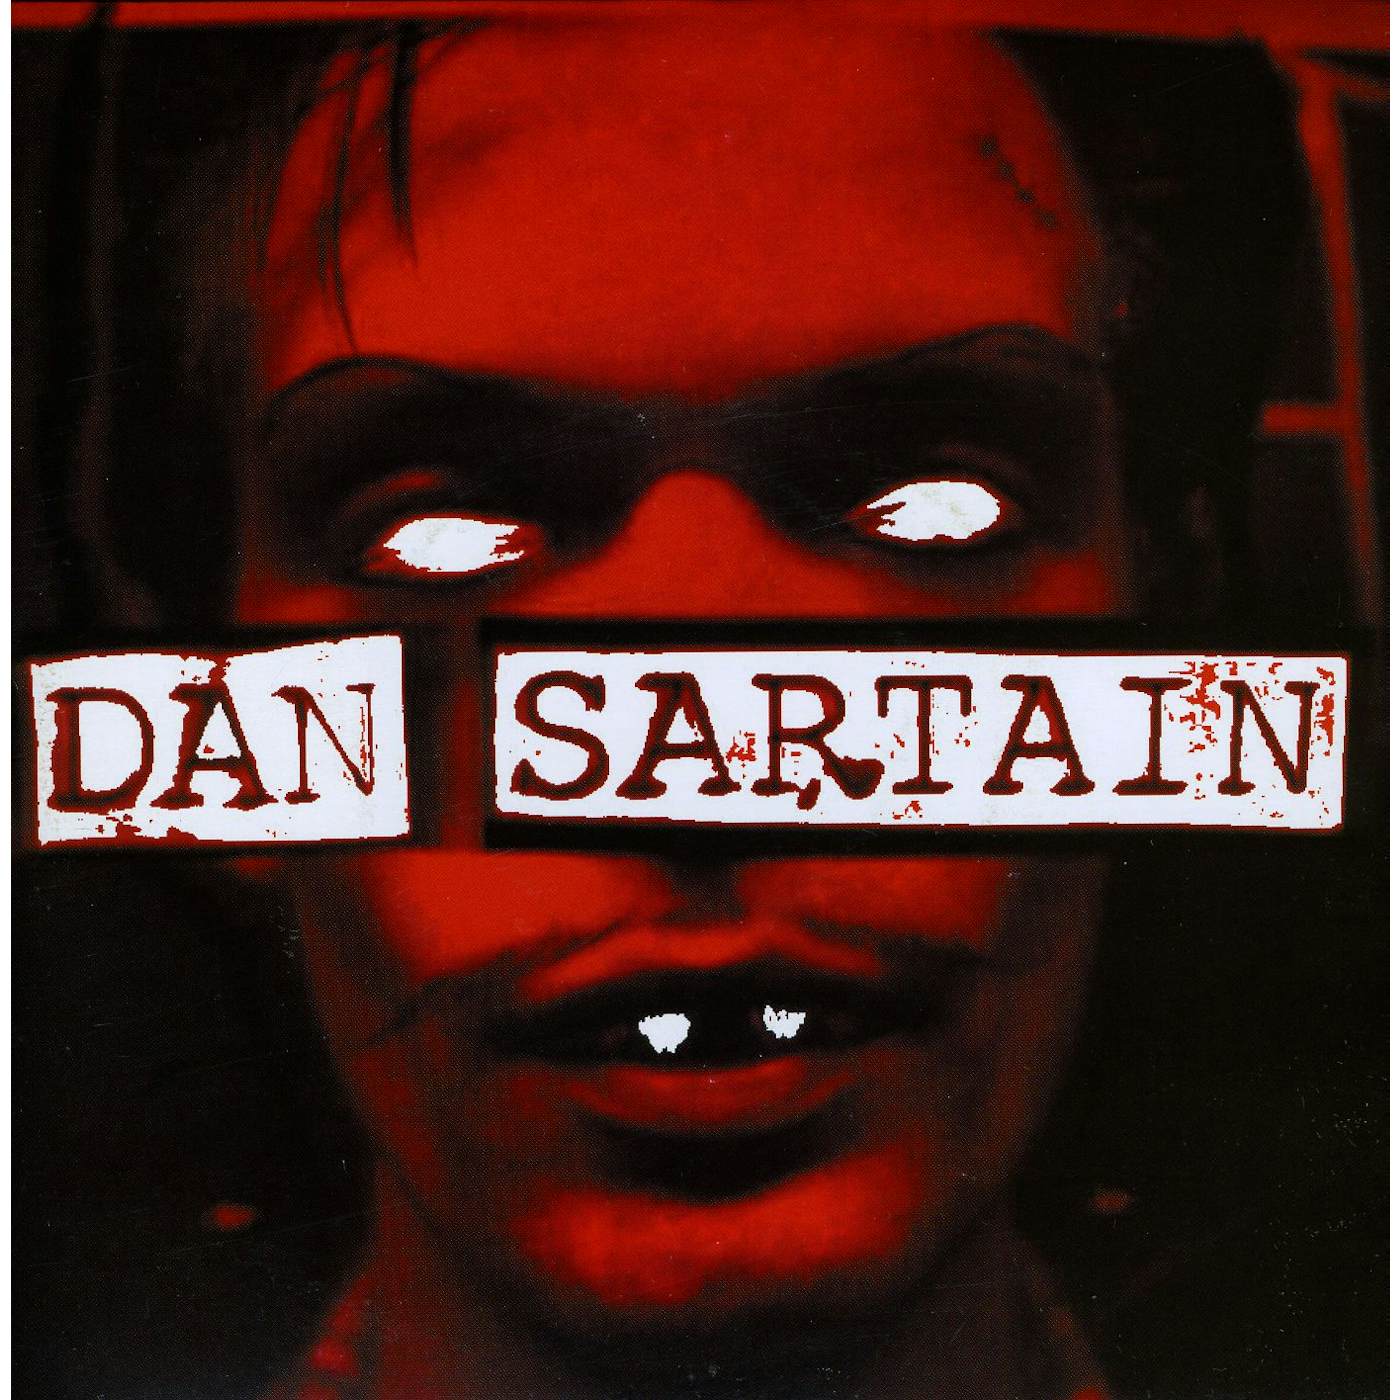 DAN SARTAIN Vinyl Record